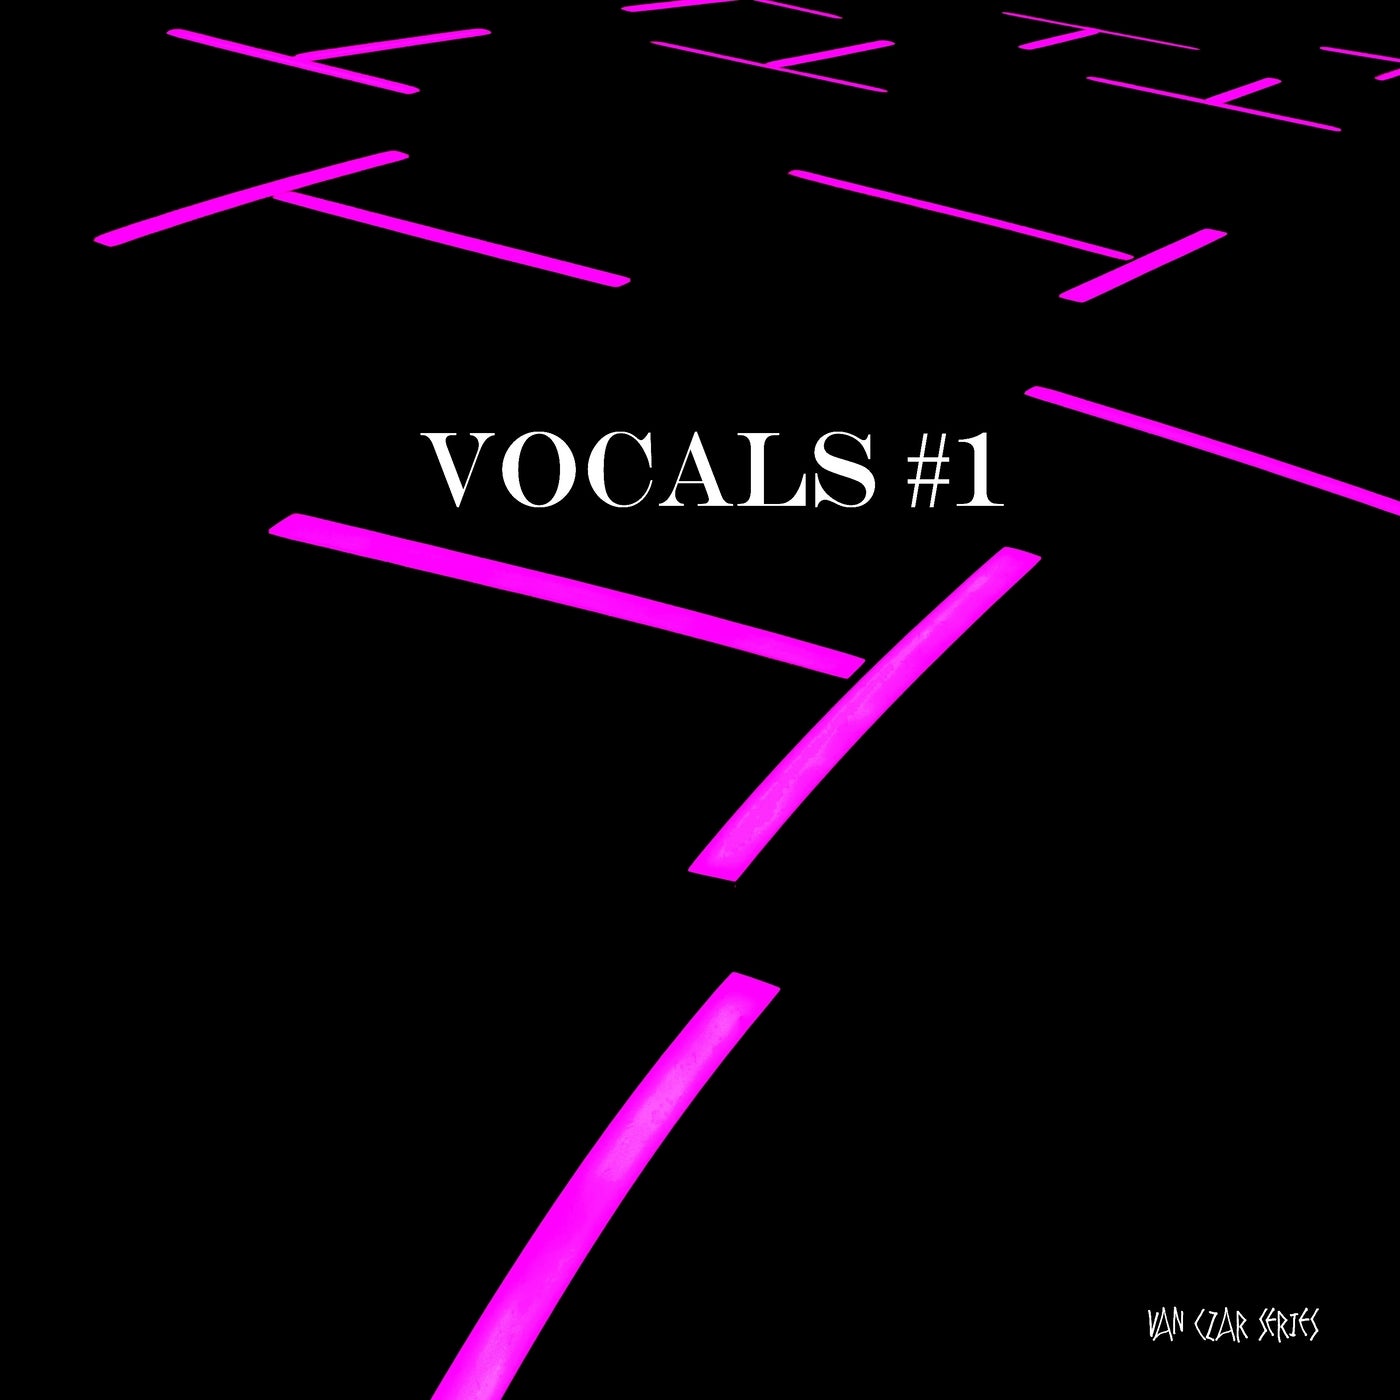 Vocals #1 - Mixed by Disco Van